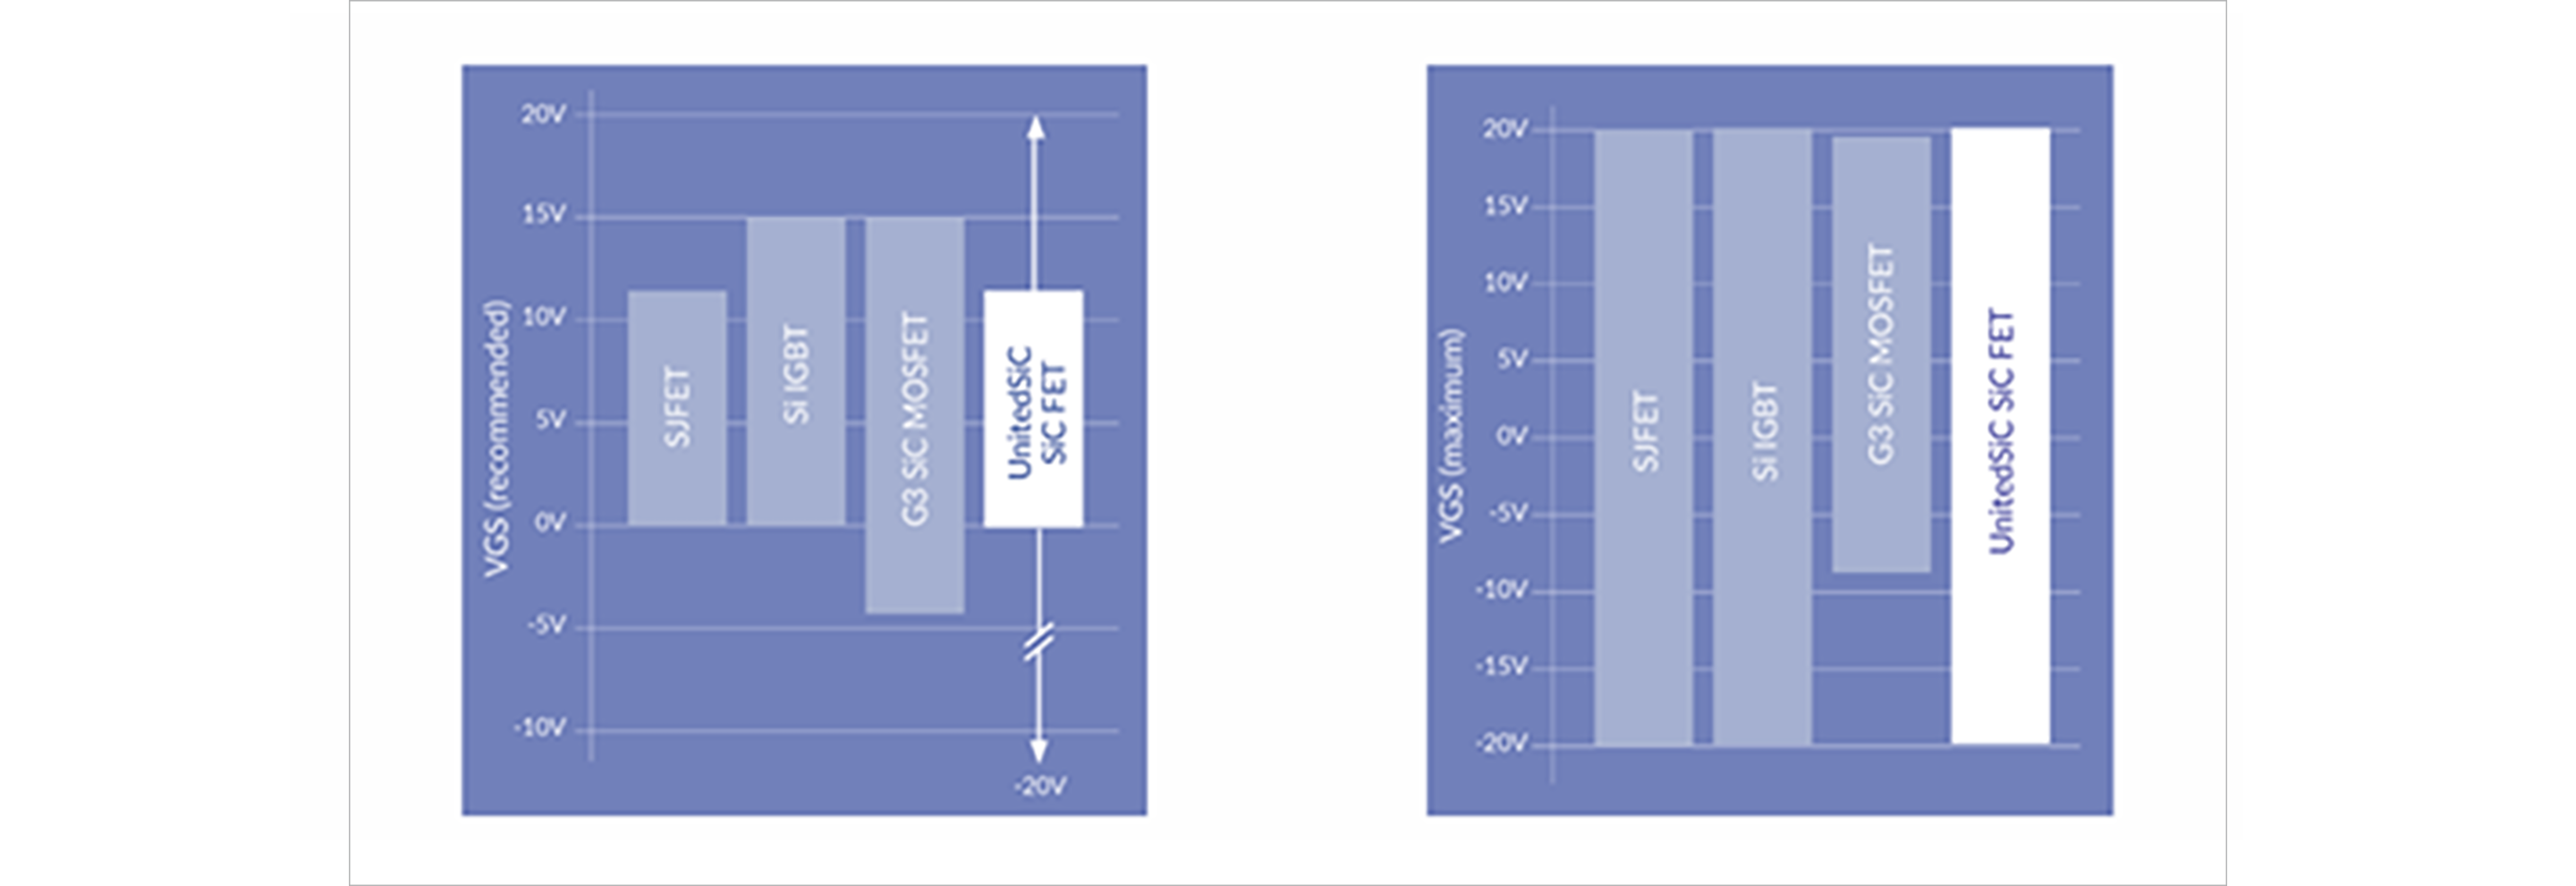 図2. 各パワーデバイスのVGS推奨動作電圧とVGSの絶対最大定格電圧